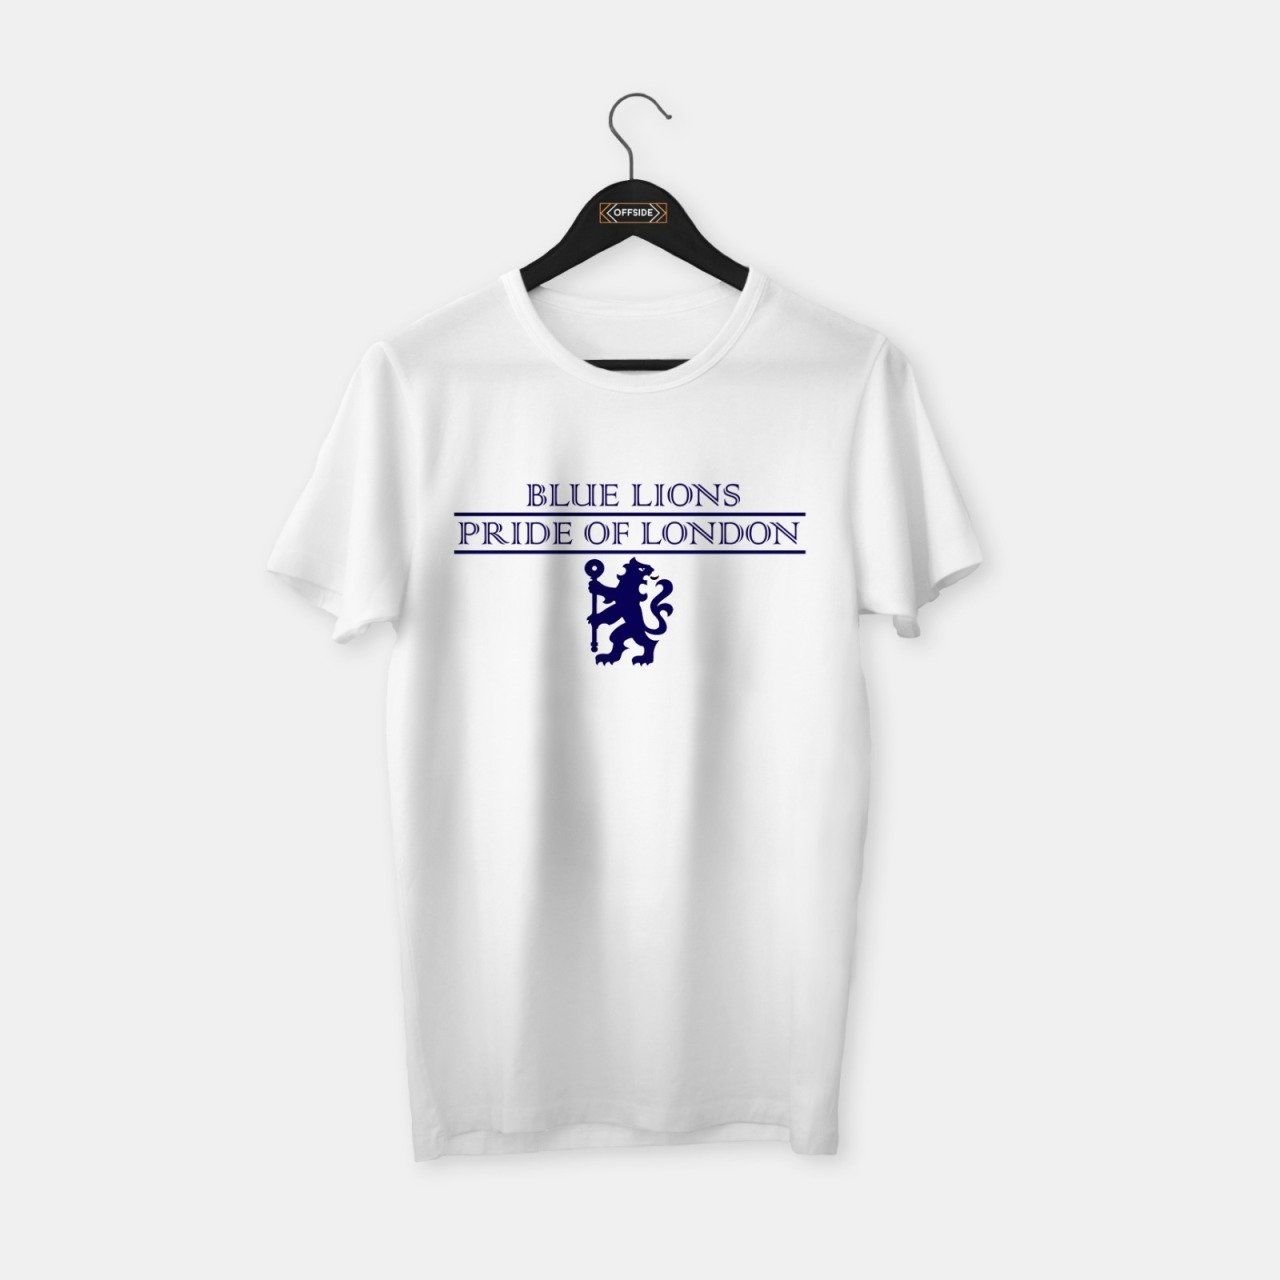 Blue Lions - Chelsea T-shirt